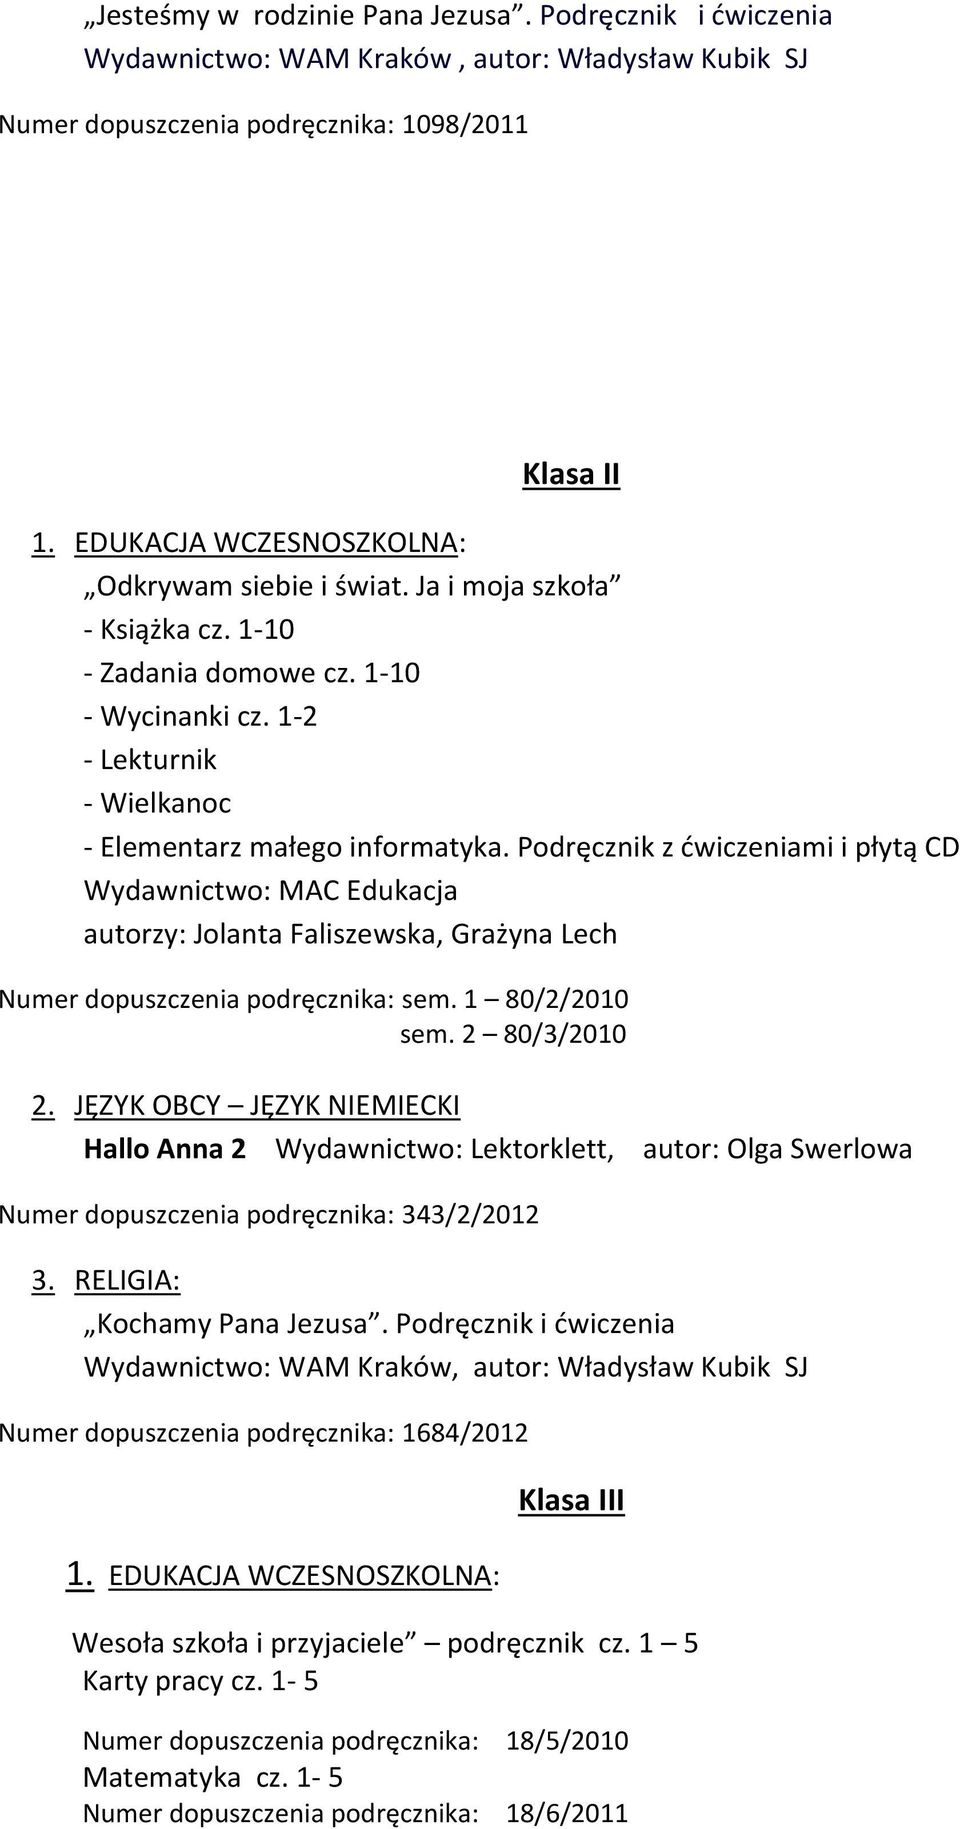 Podręcznik z ćwiczeniami i płytą CD Wydawnictwo: MAC Edukacja autorzy: Jolanta Faliszewska, Grażyna Lech Numer dopuszczenia podręcznika: sem. 1 80/2/2010 sem. 2 80/3/2010 2.